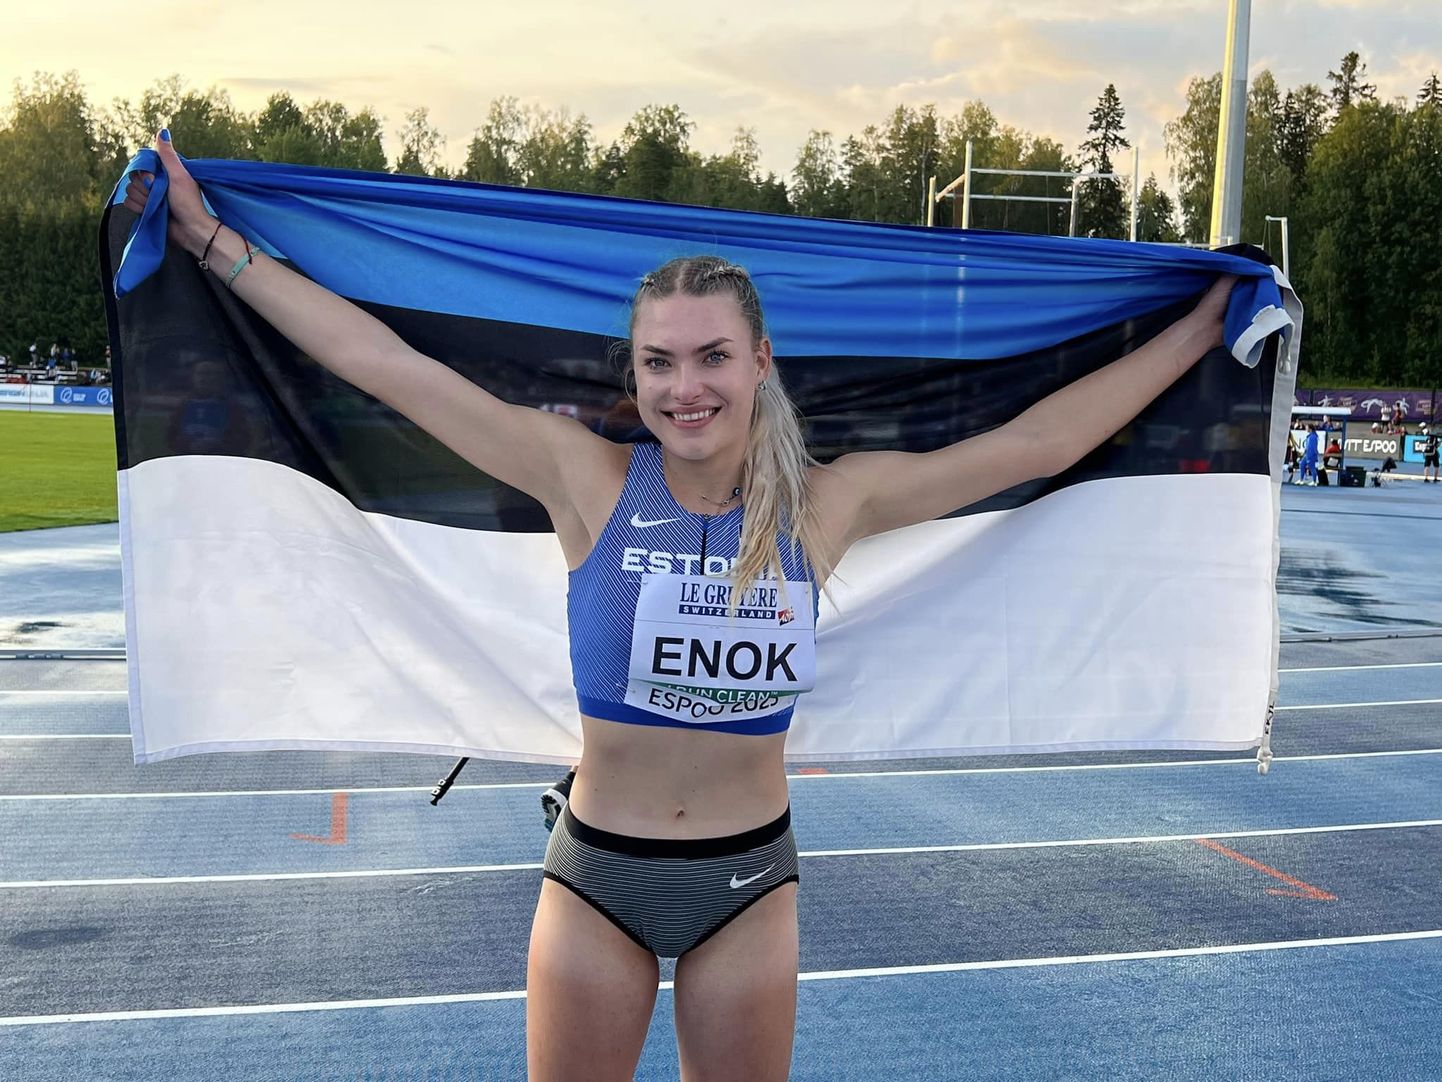 Pippi Lotta Enok rõõmustamas Espoo staadionil võidetud pronksmedali üle.